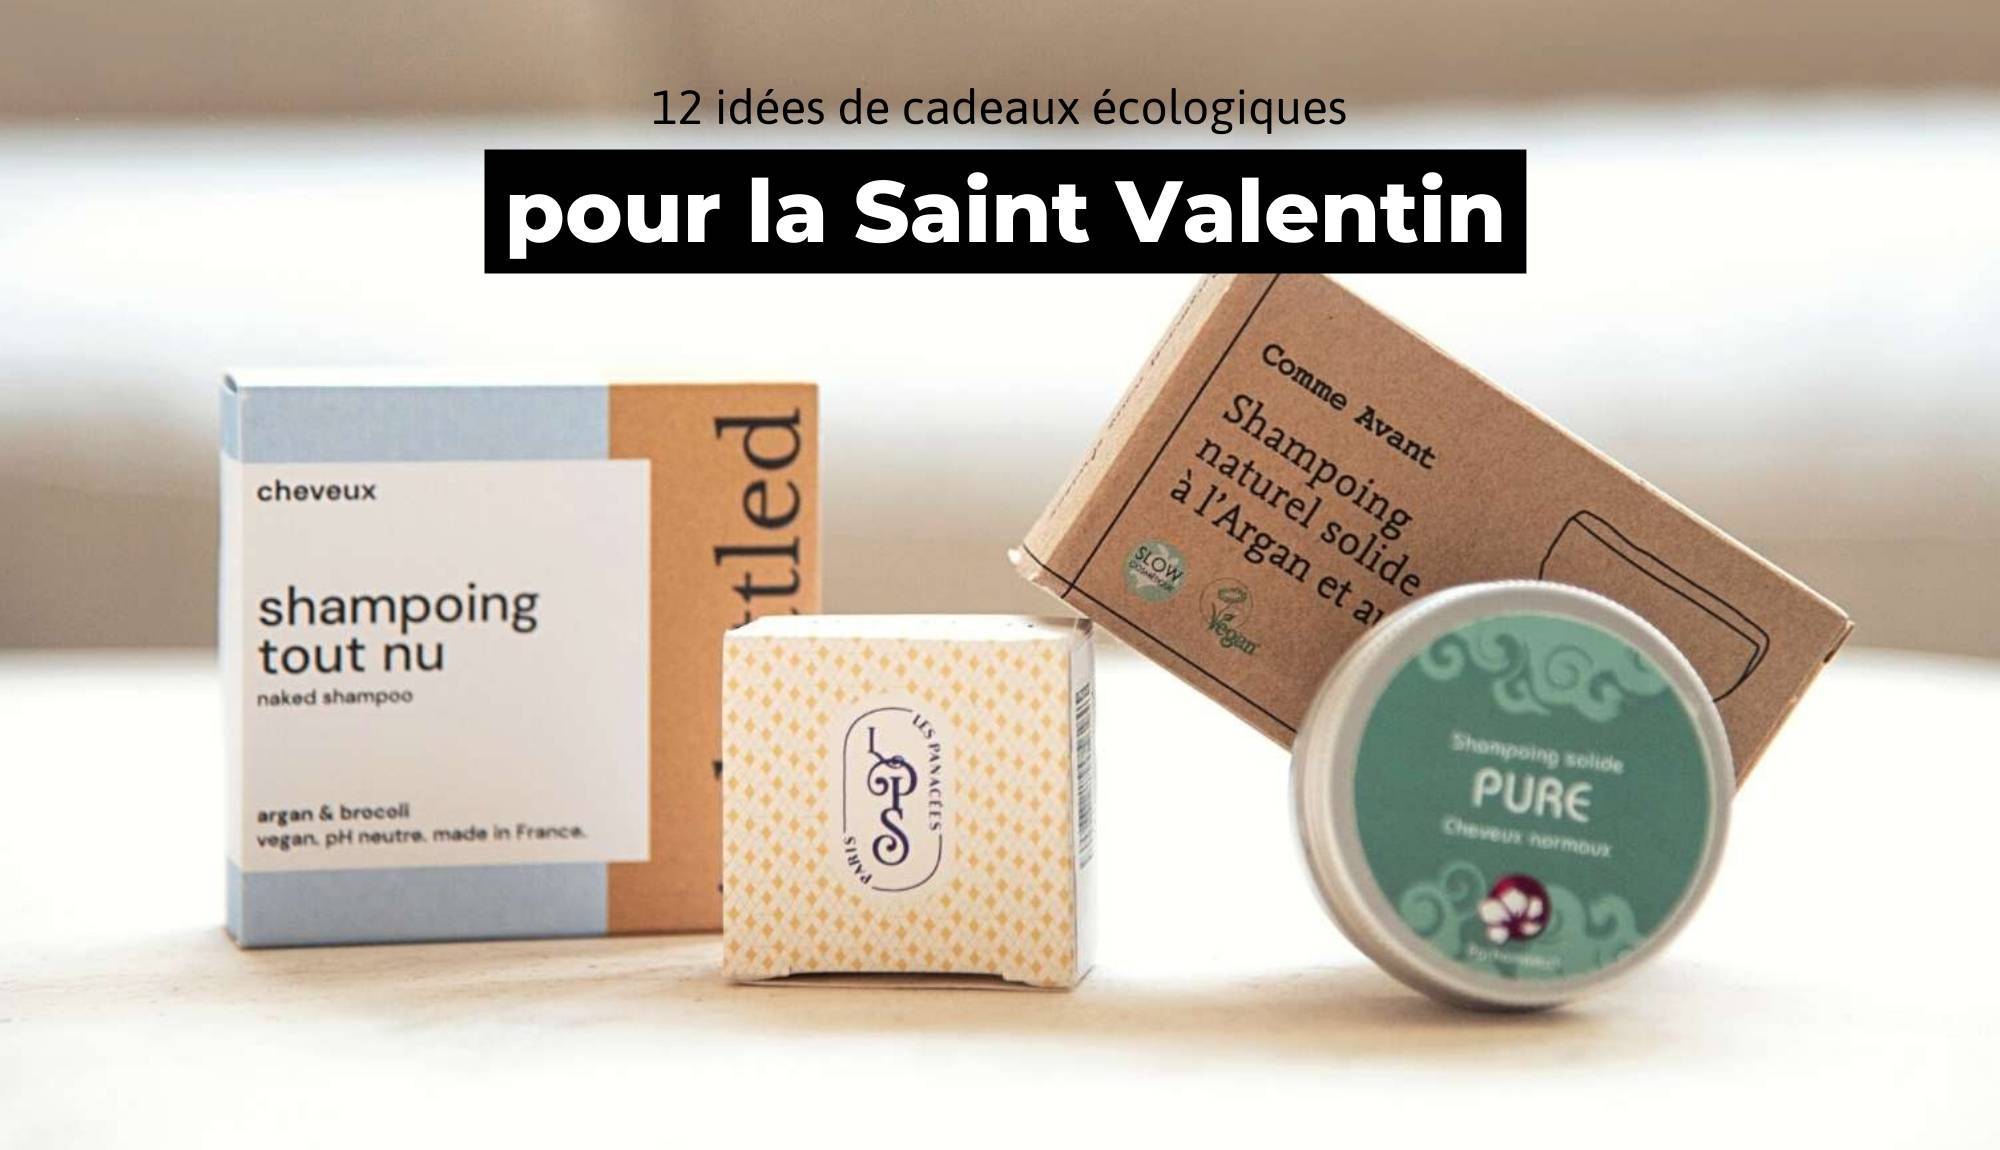 12 idées de cadeaux originaux et écologiques pour la Saint Valentin - Trust Society